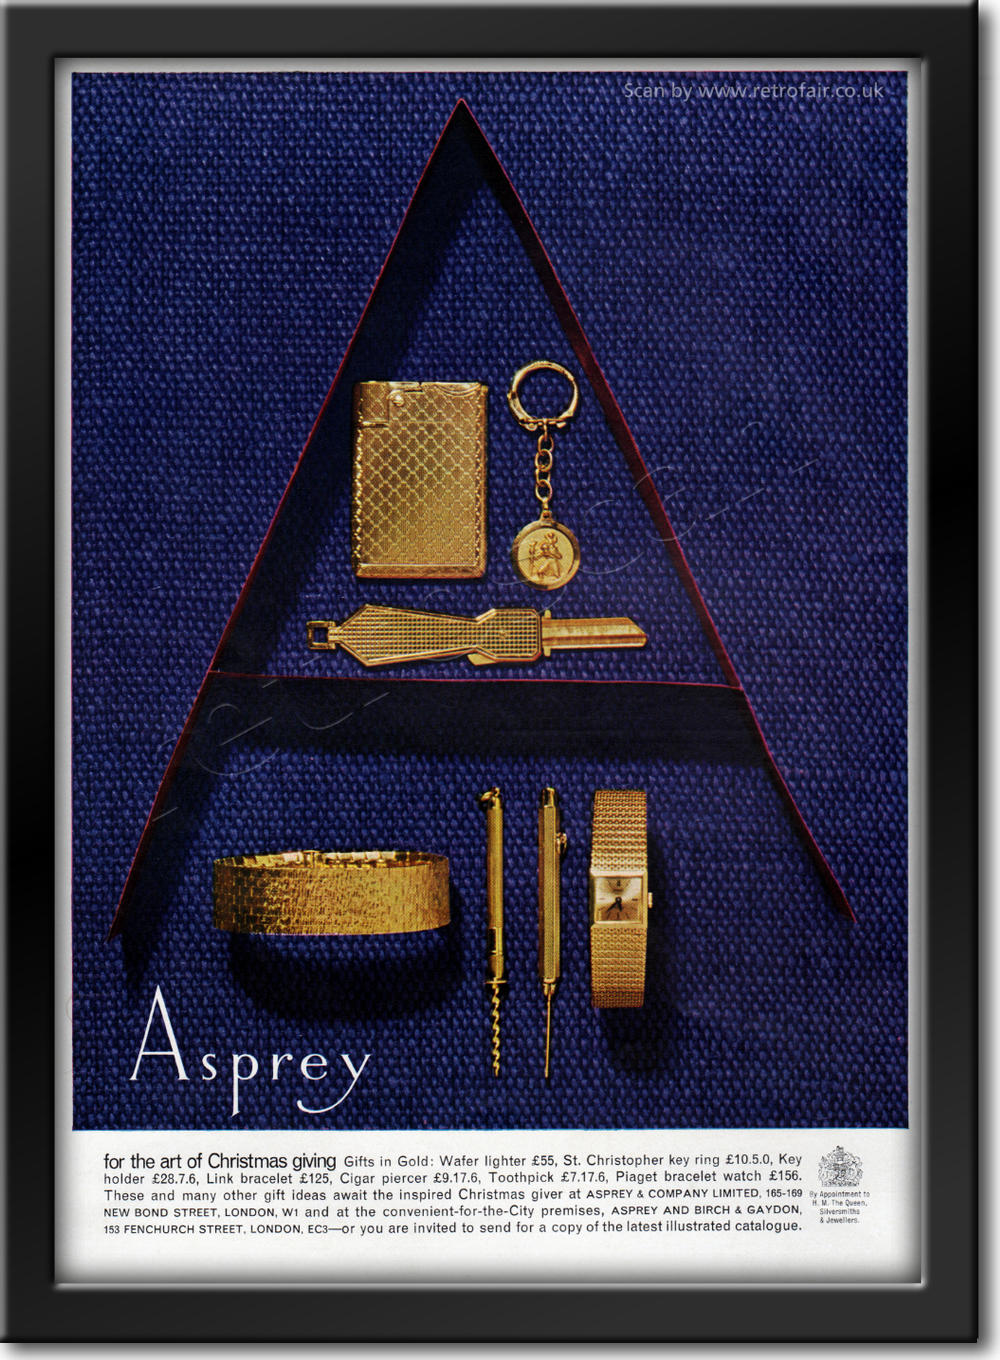 1964 vintage Asprey advert